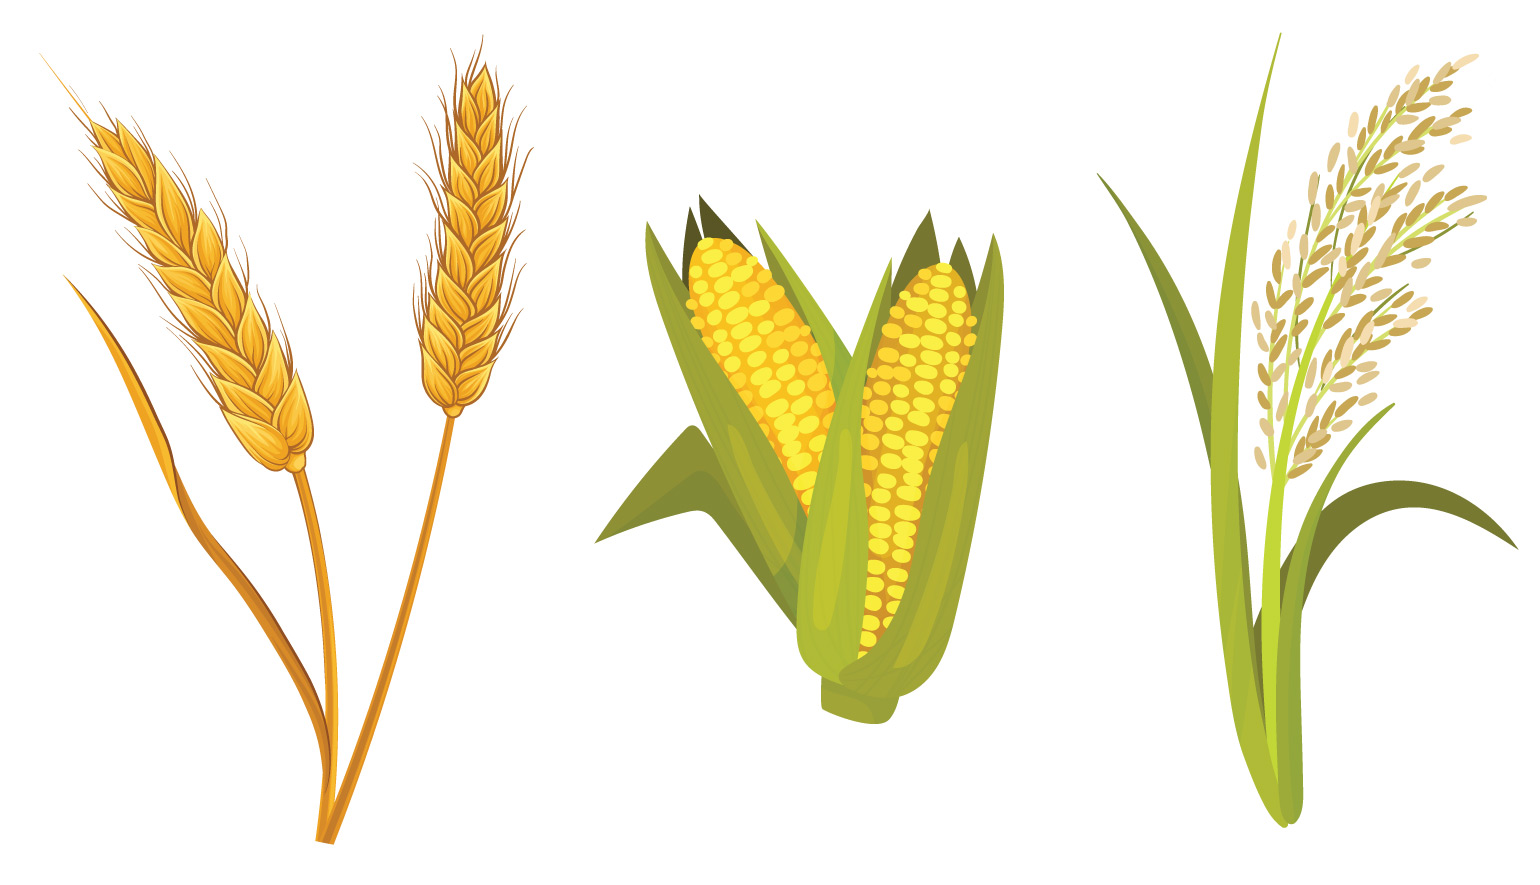 Ilustrações de milho, arroz e trigo.